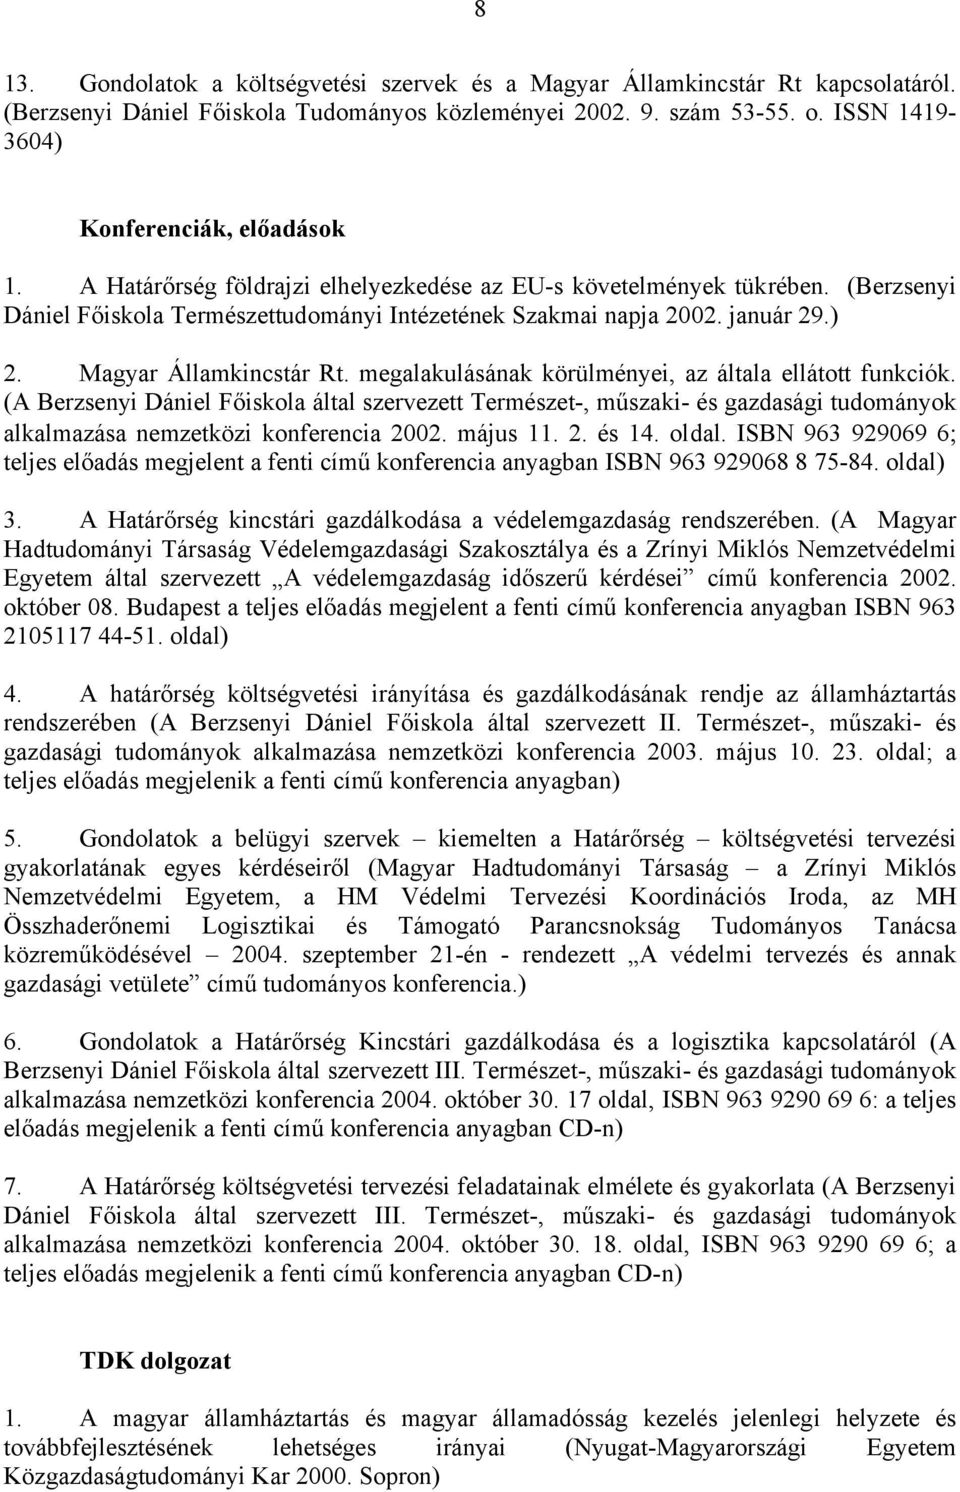 január 29.) 2. Magyar Államkincstár Rt. megalakulásának körülményei, az általa ellátott funkciók.